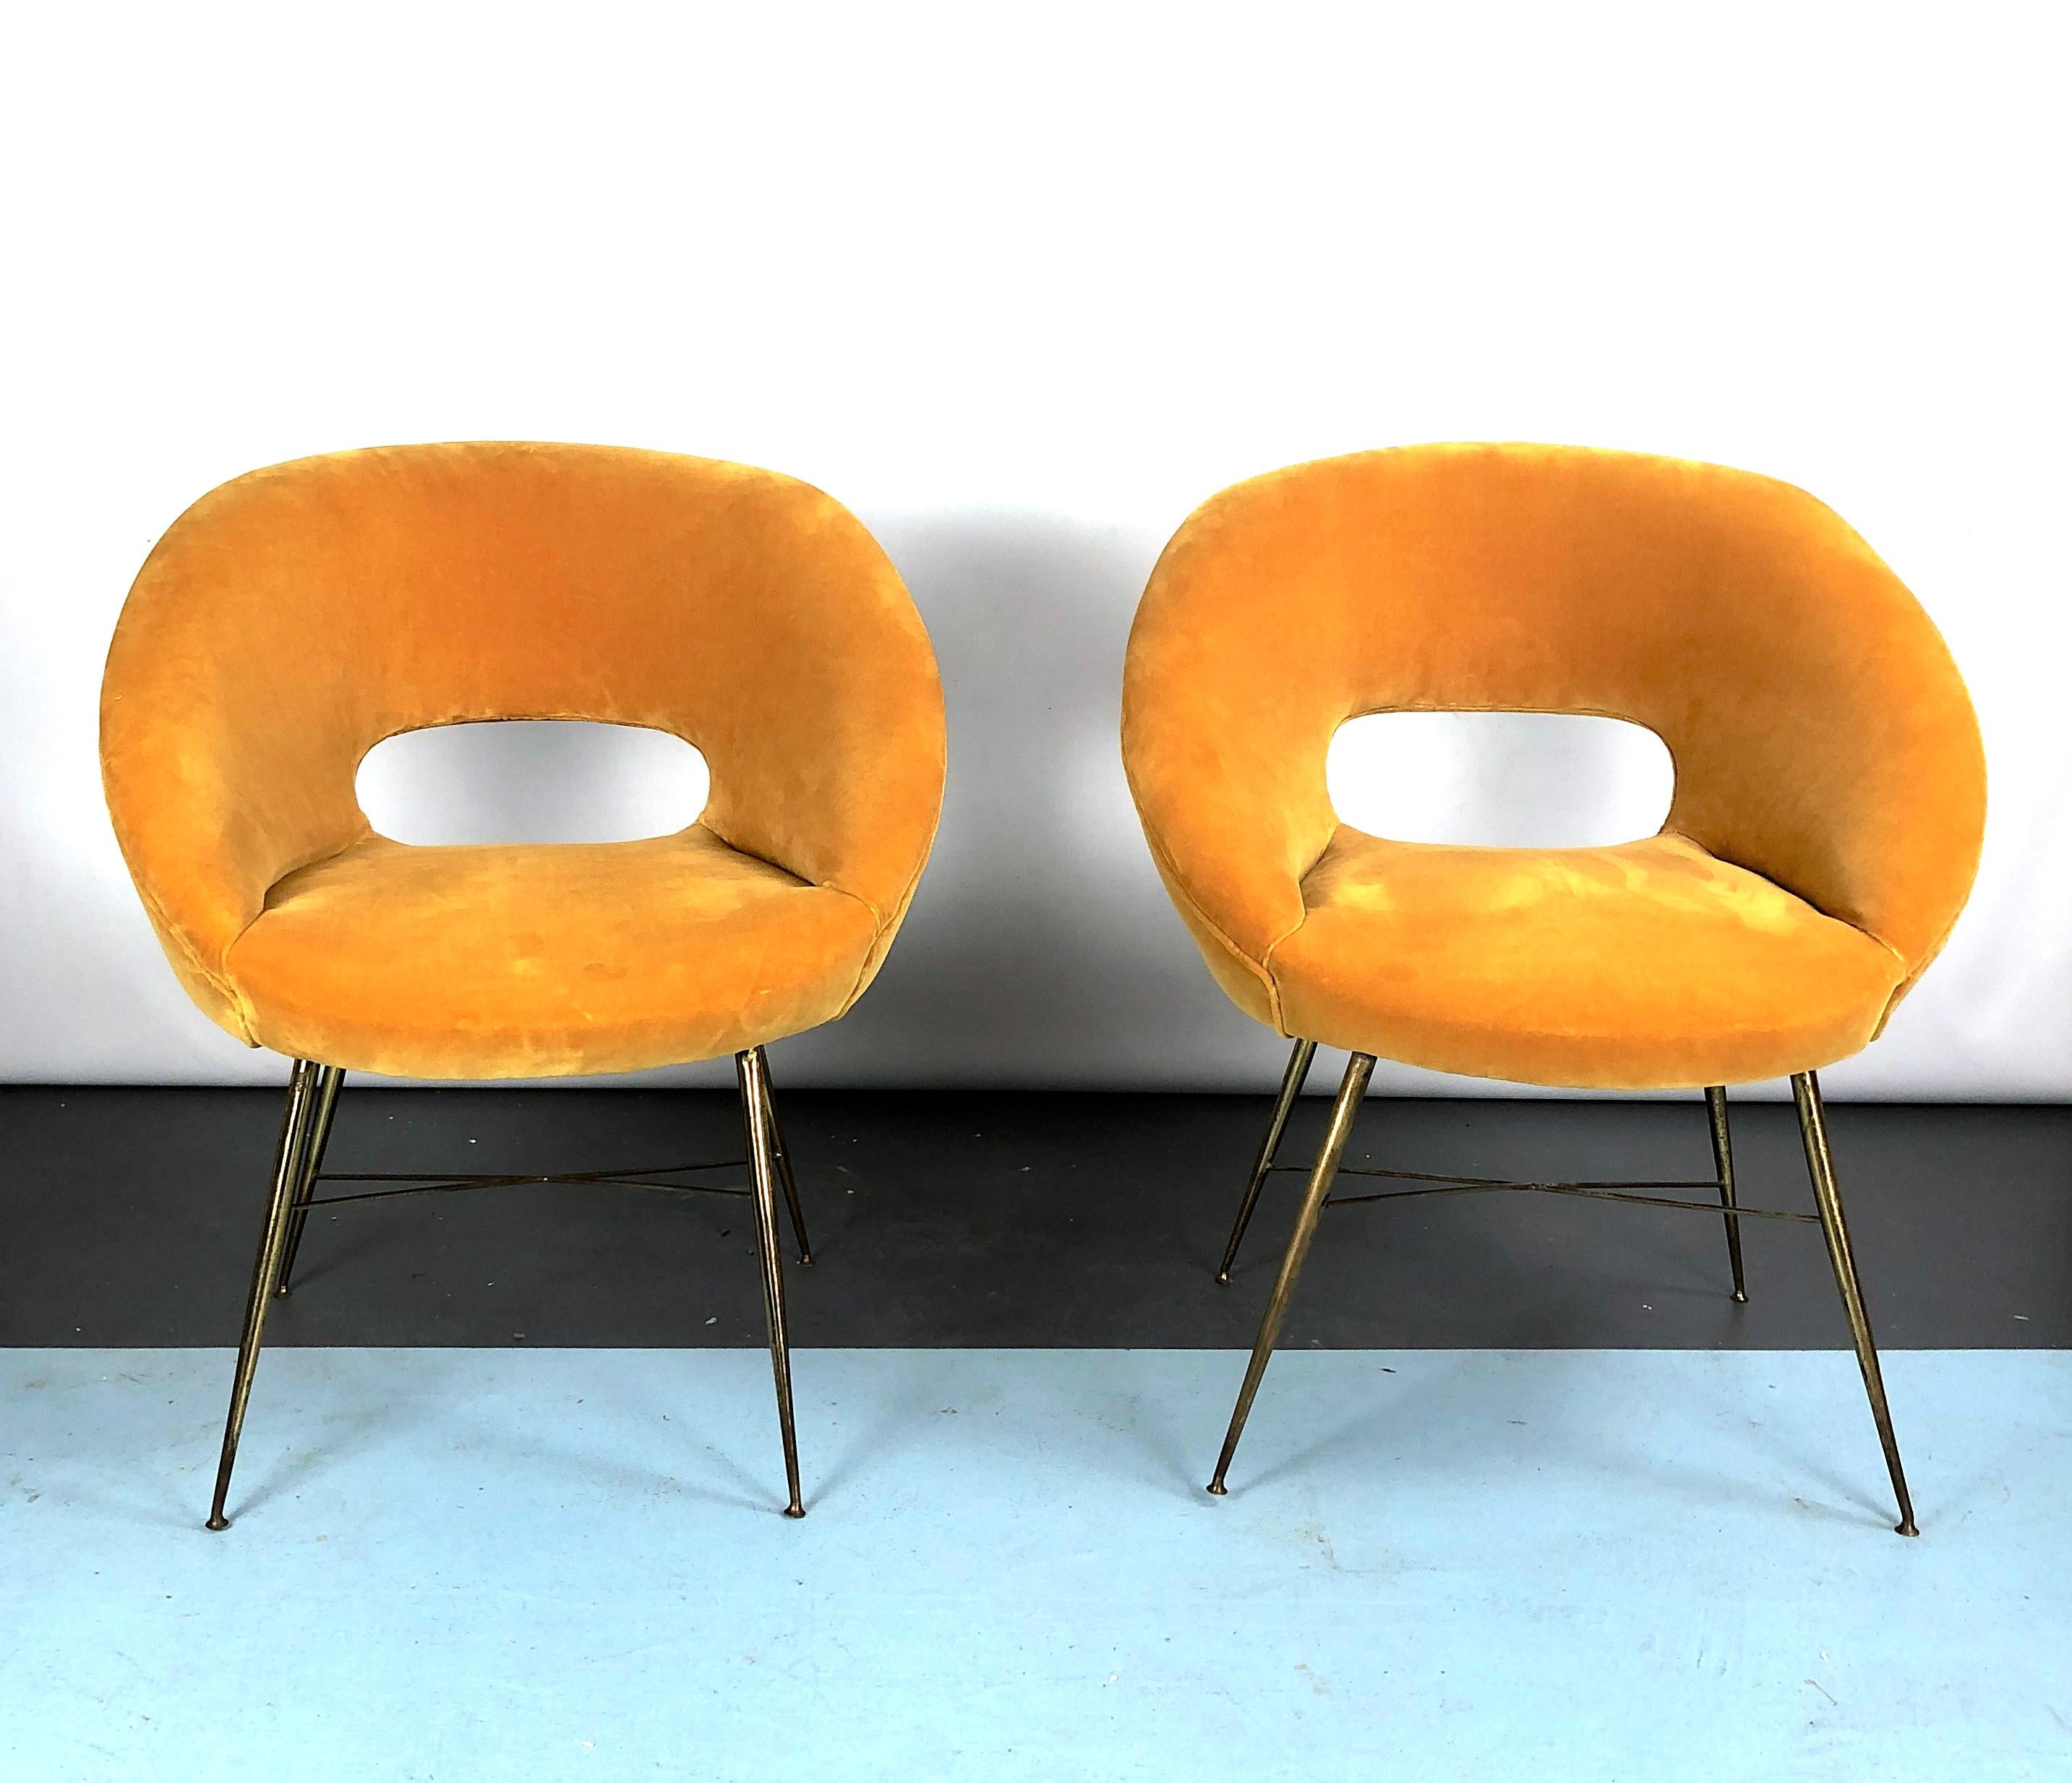 Très bon état pour cet ensemble de deux fauteuils italiens dessinés par Silvio Cavatorta et produits dans les années 50. Tapissé de velours de coton doré. Patine et trace d'âge et d'utilisation sur les pieds en laiton.